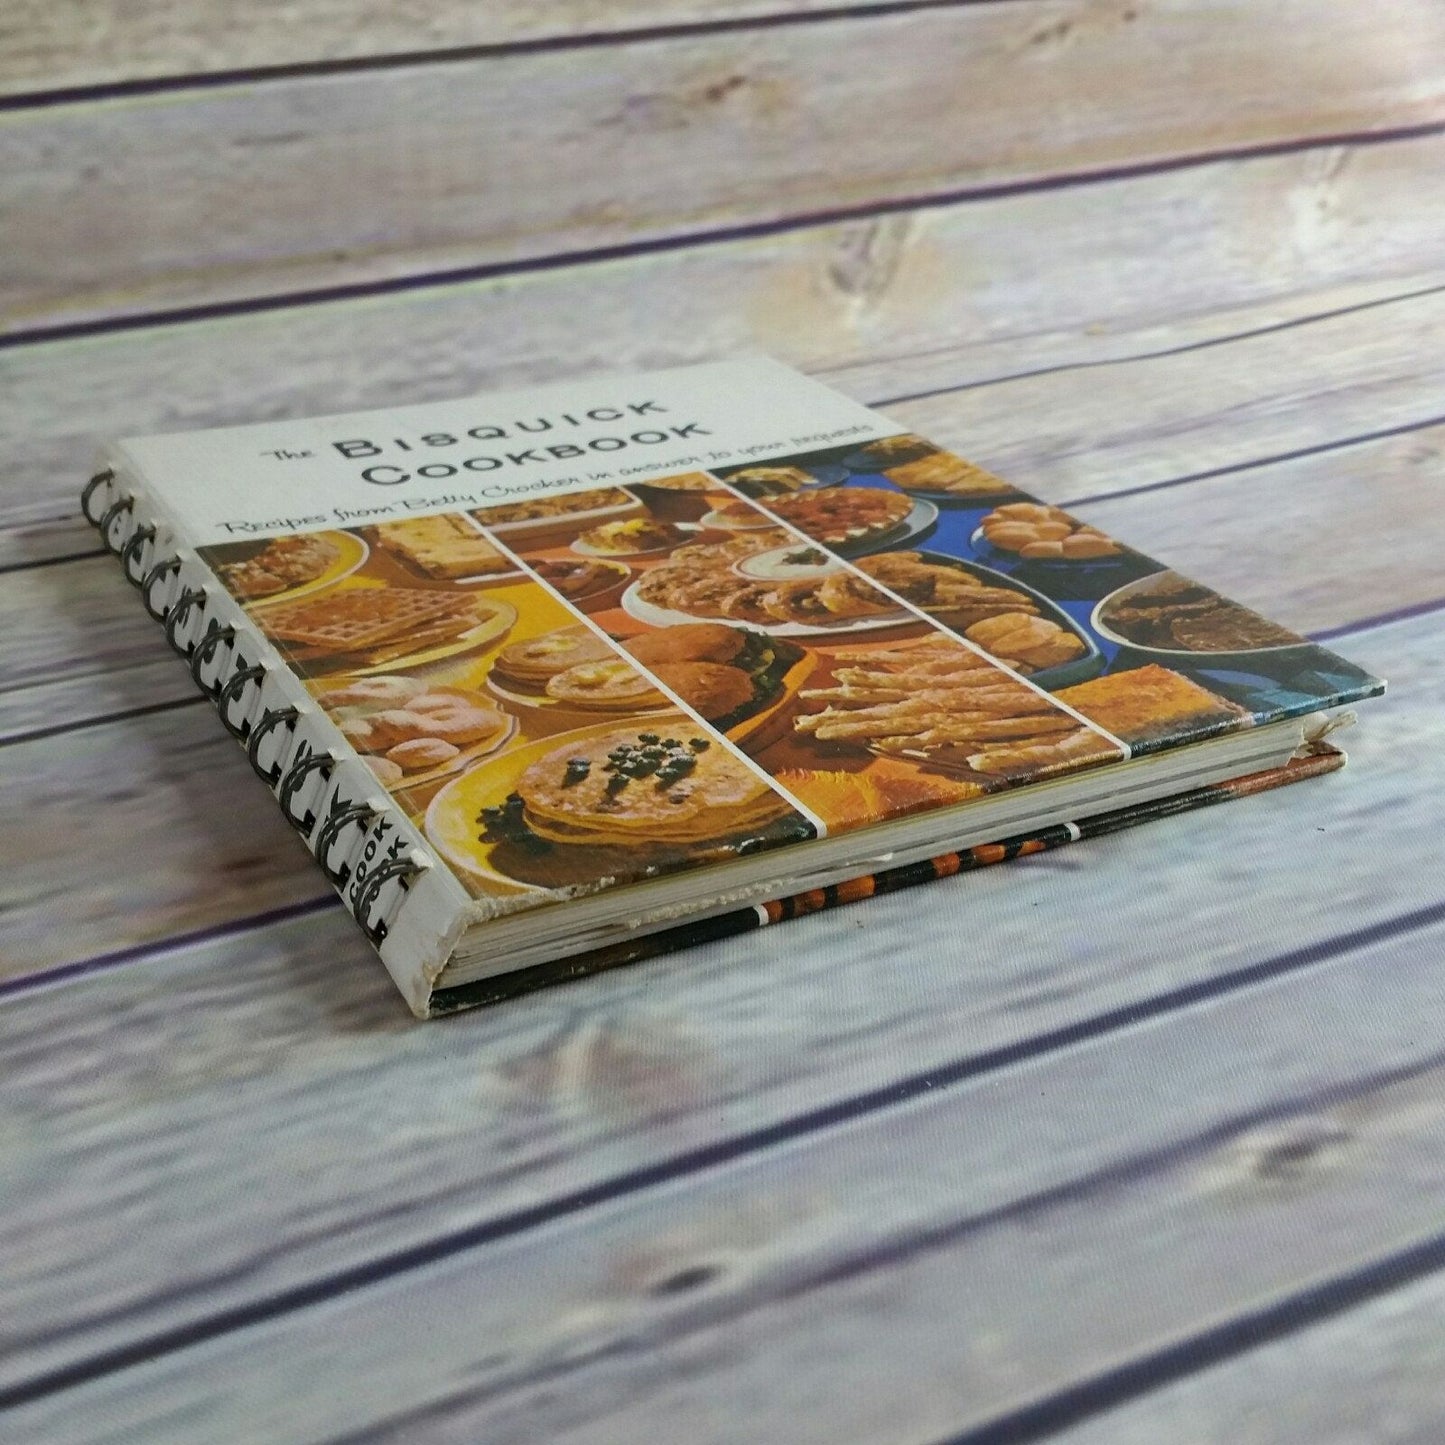 Vintage Cookbook Betty Crocker Bisquick Cookbook 1964 First Edition Spiral Bound Hardcover